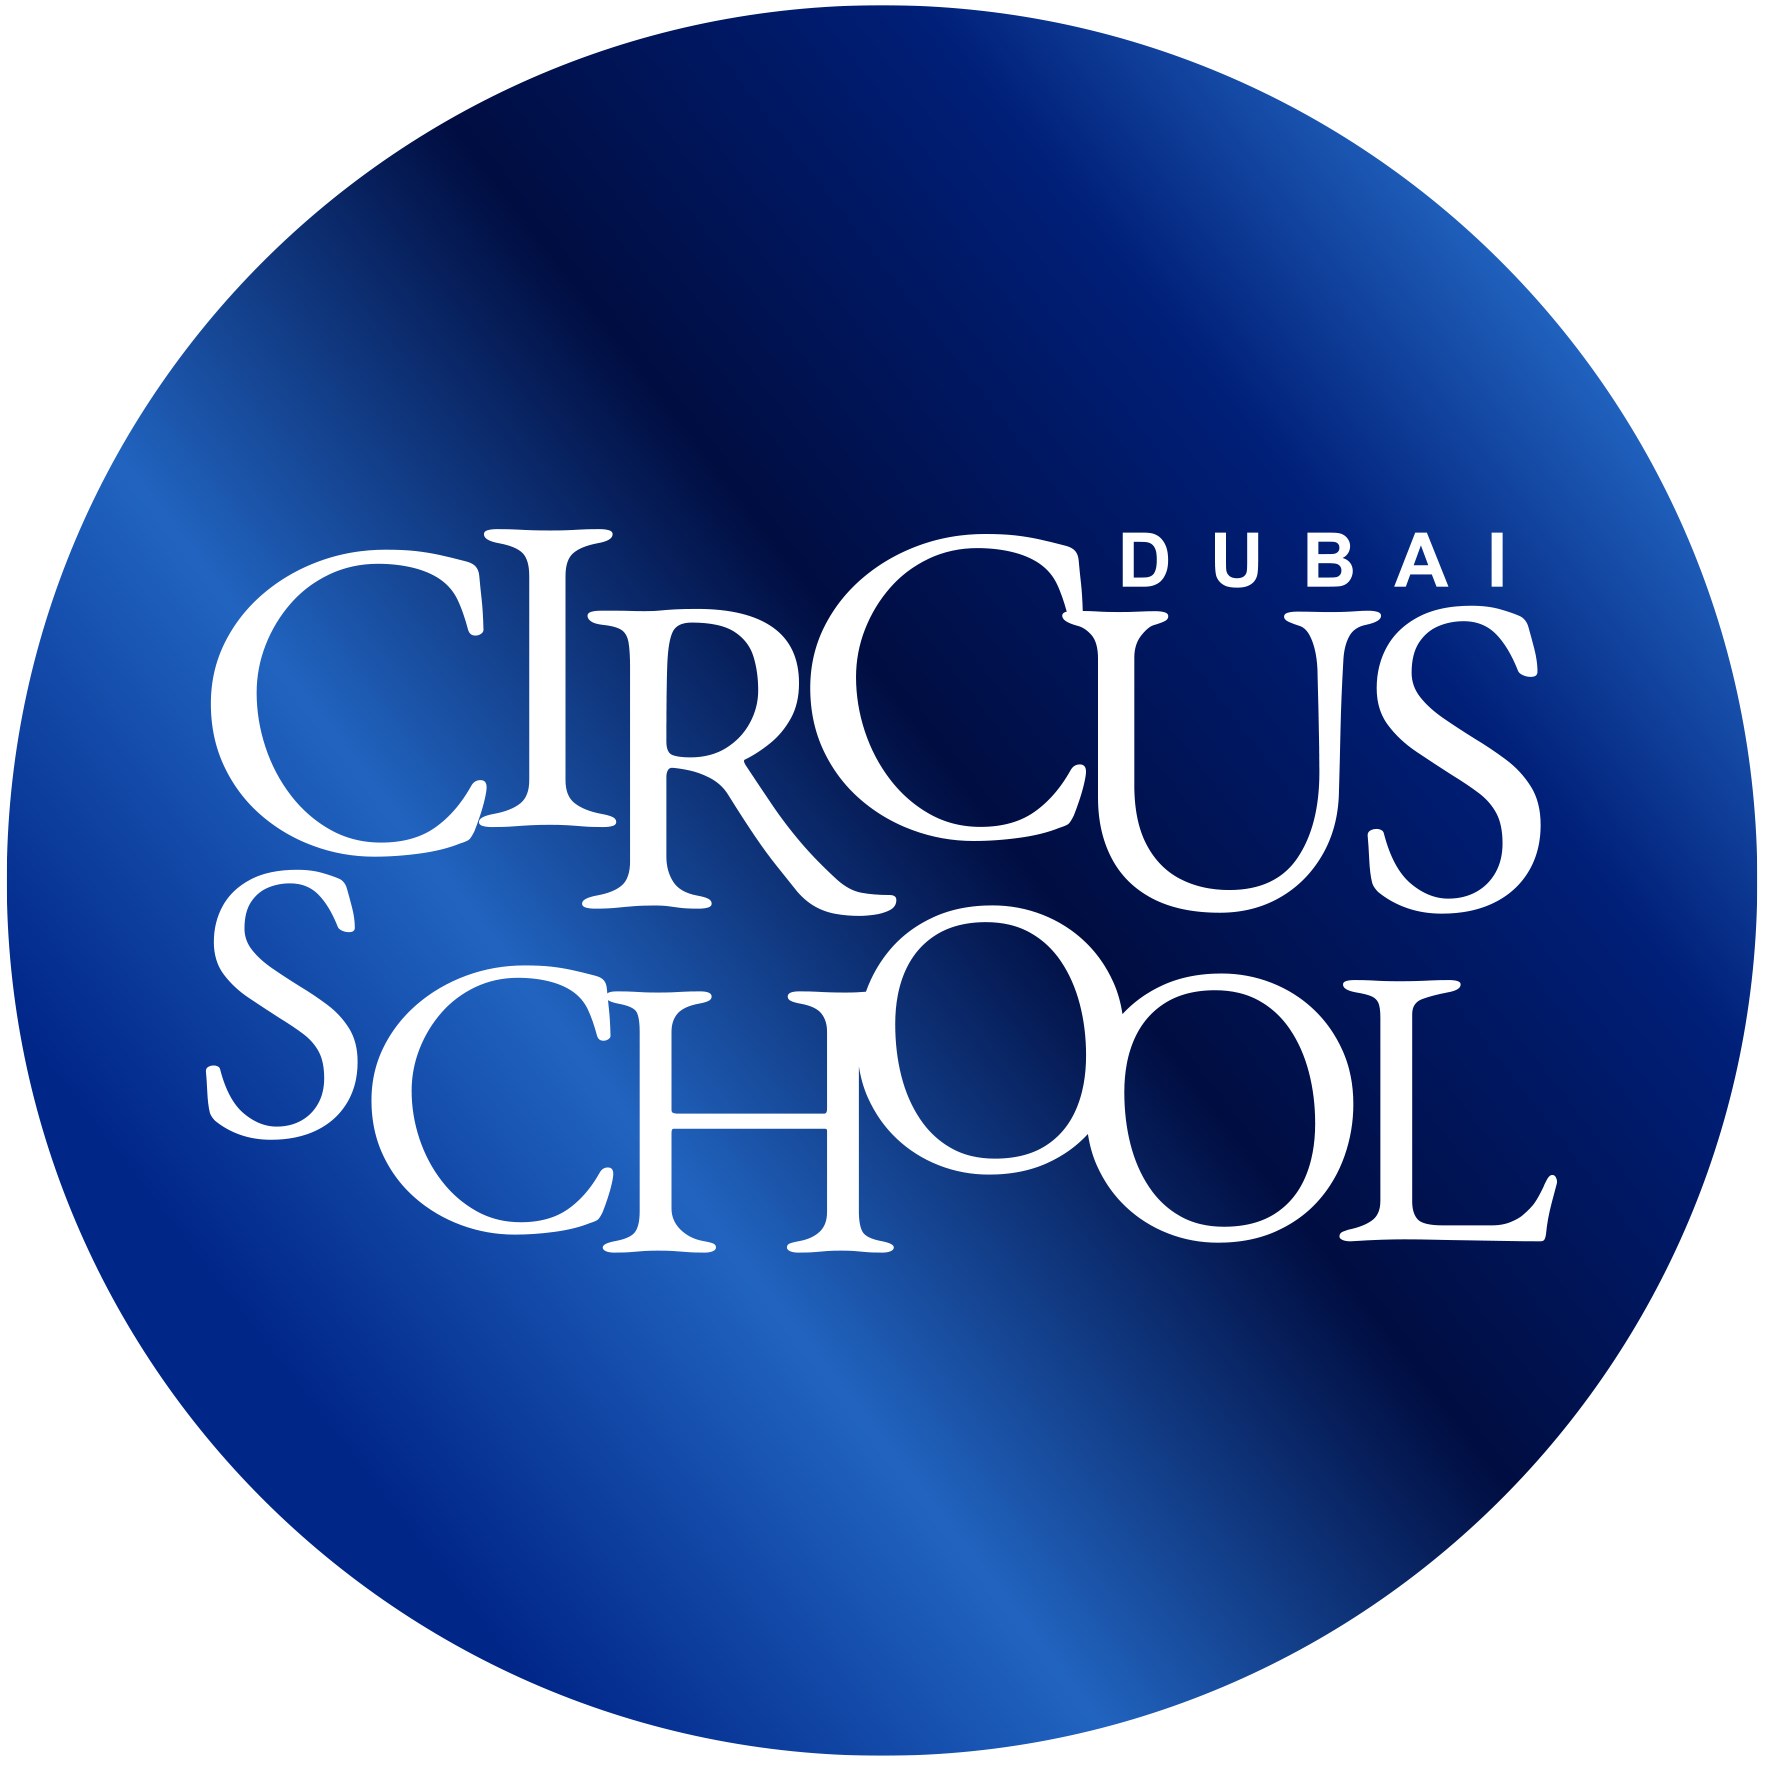 Dubai Circus School Logo